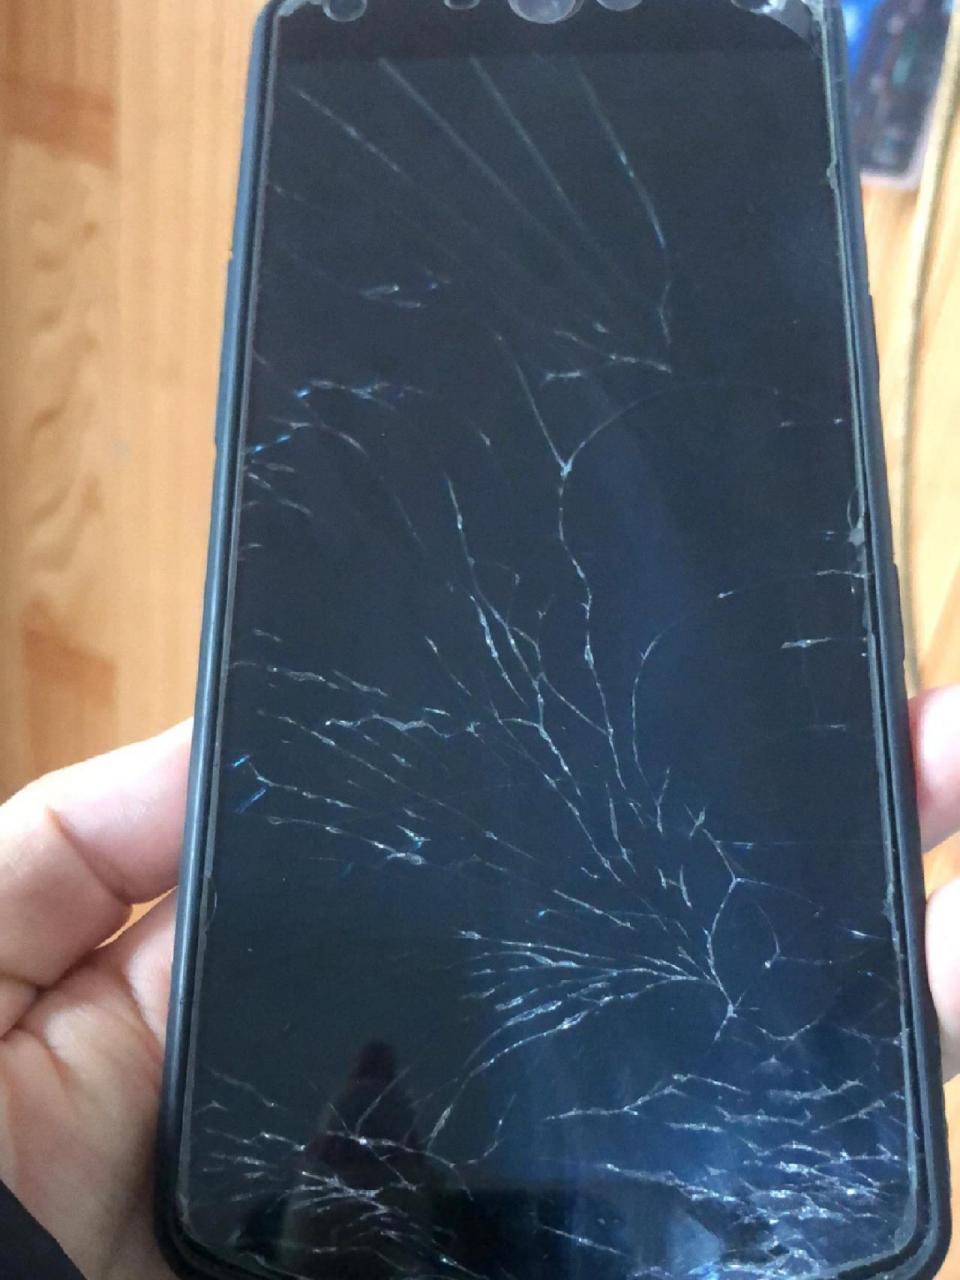 我手机是屏幕摔坏了呢还是钢化膜摔坏了呢  哎,运